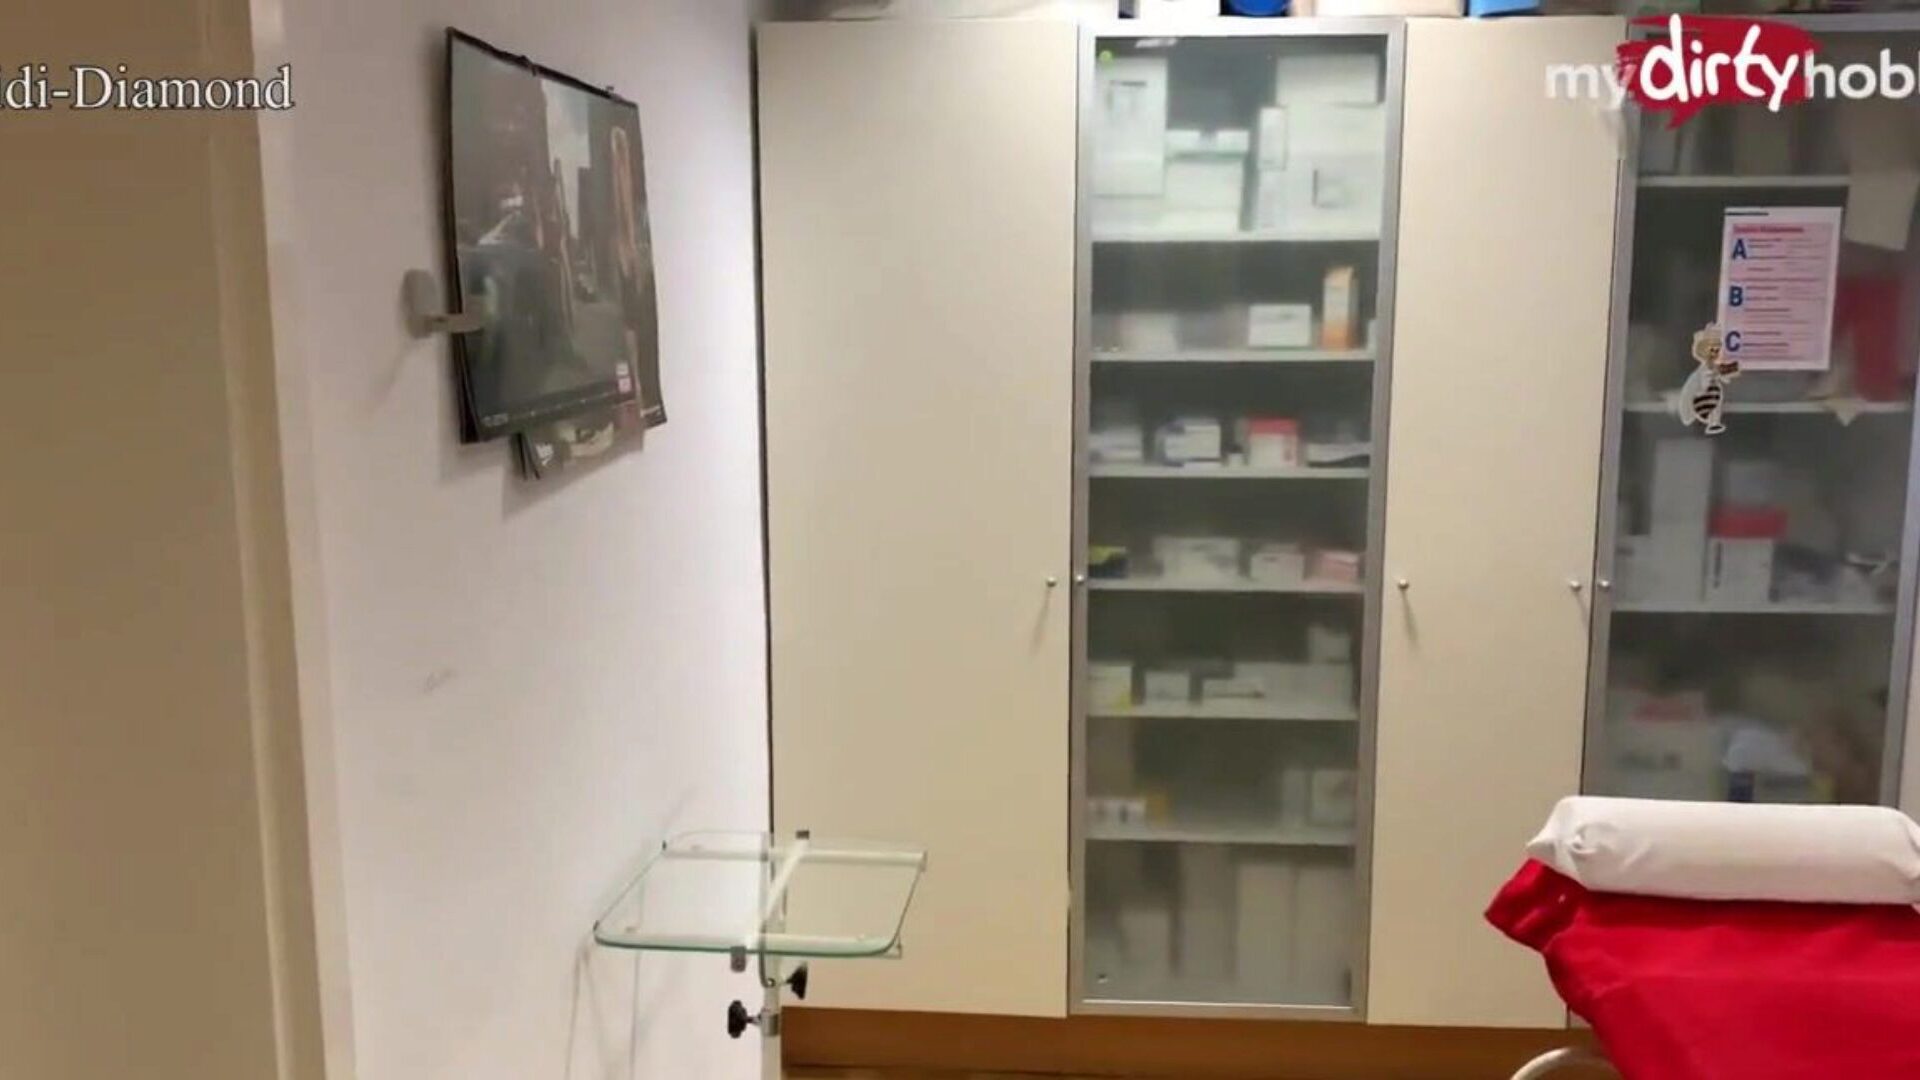 mydirtyhobby - doktor tijekom pregleda pregleda jebe prsastu plavokosu pacijenticu